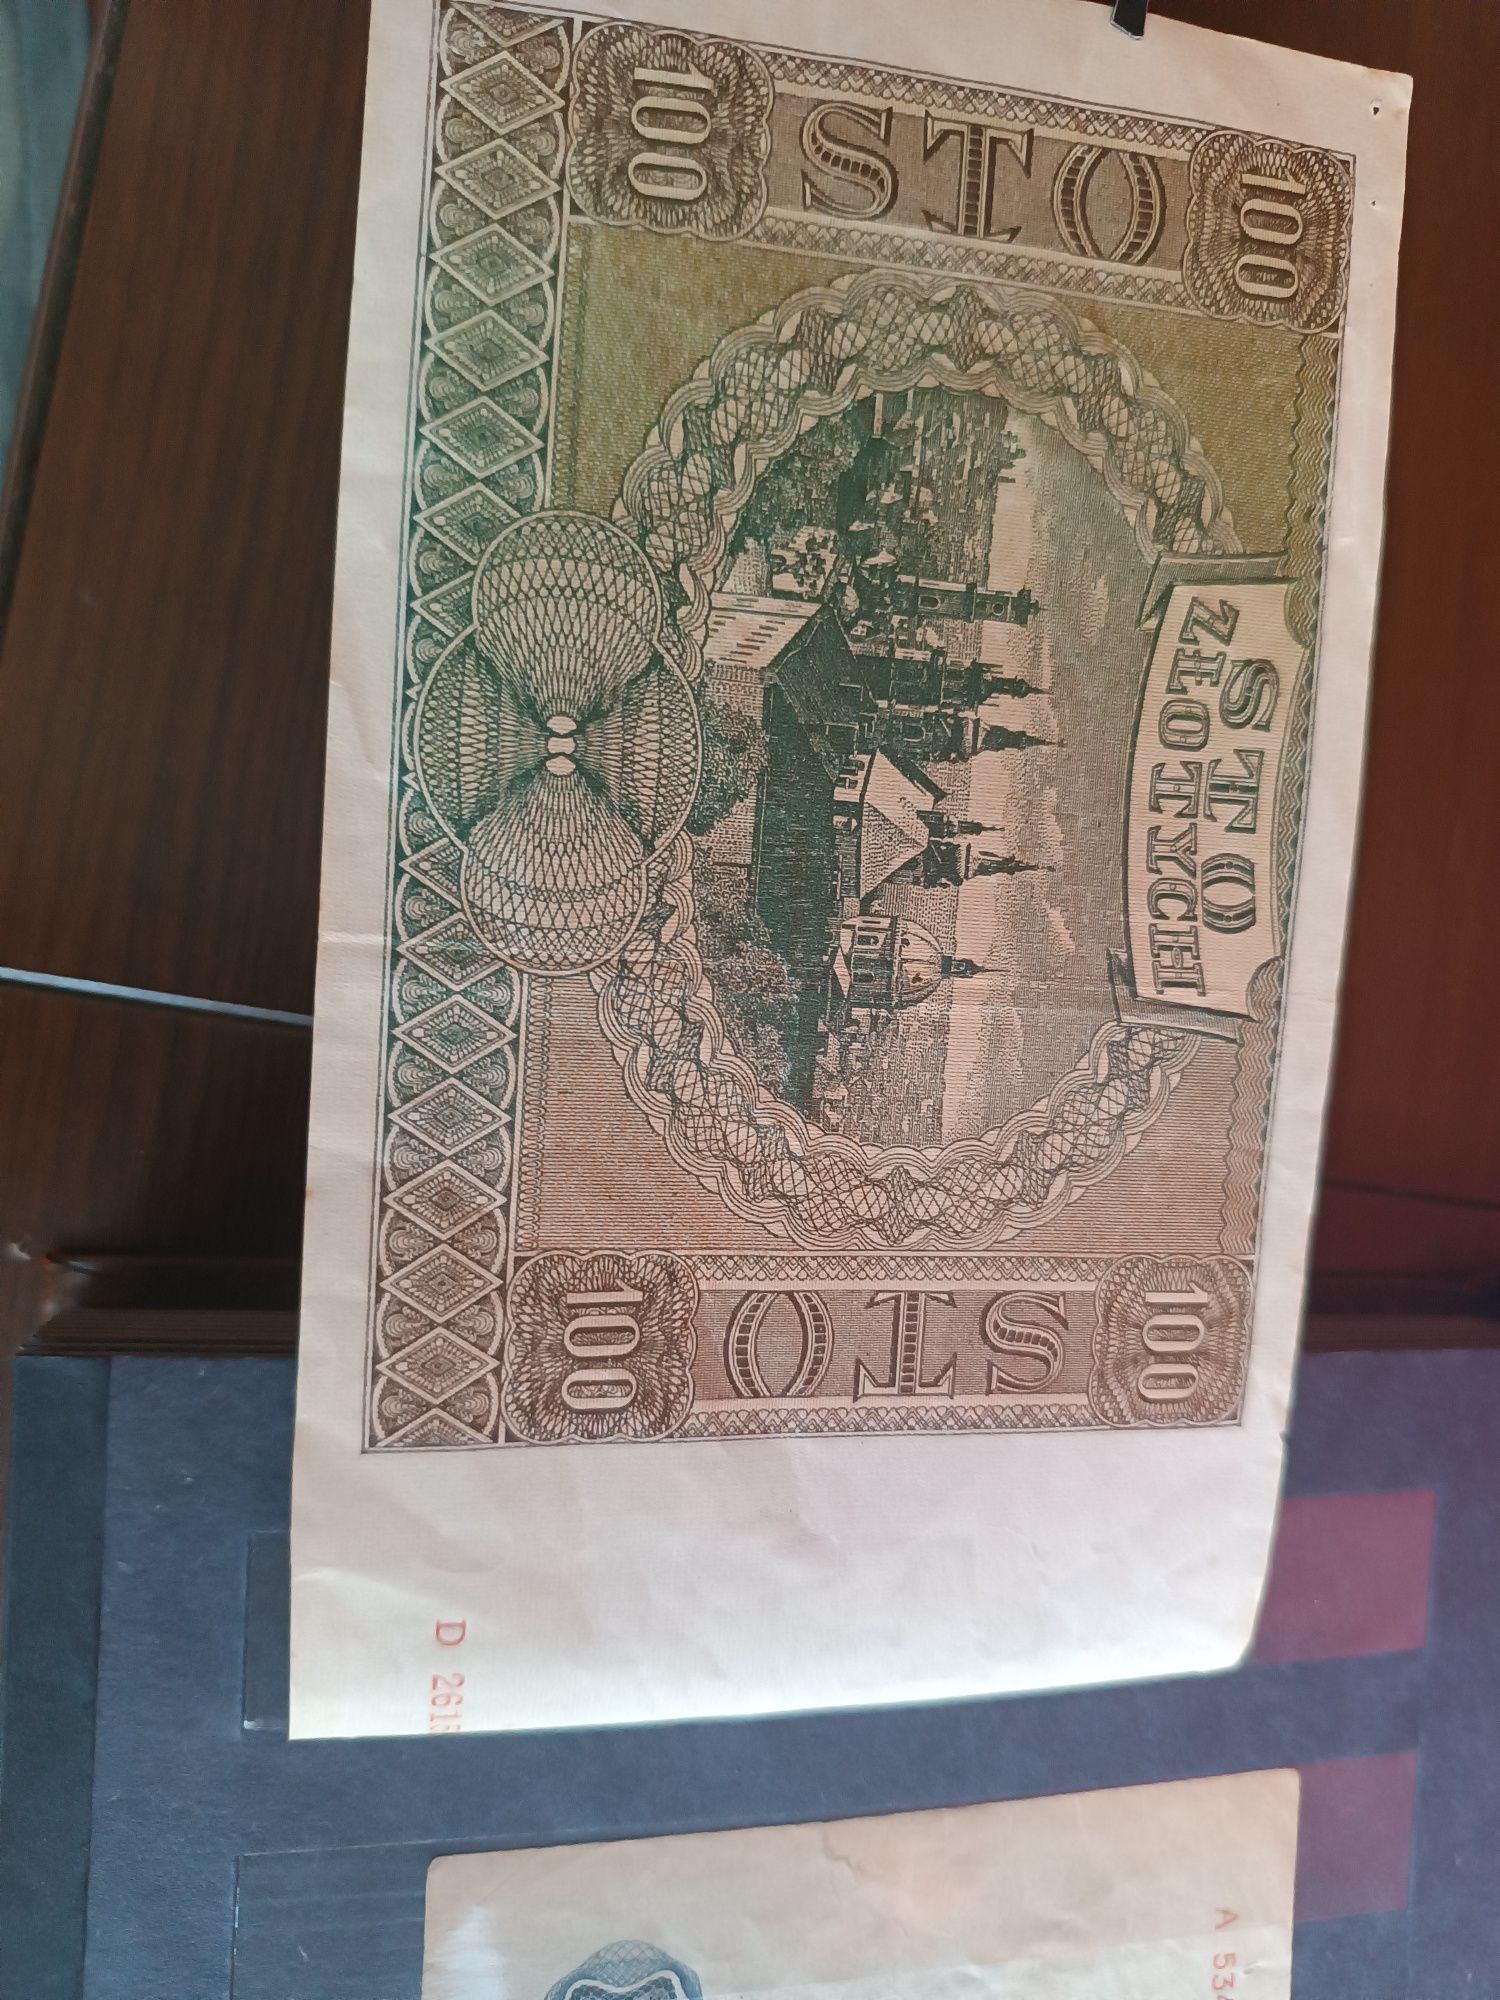 Banknot 100 zł 1 sierpnia 1941 rok seria d.